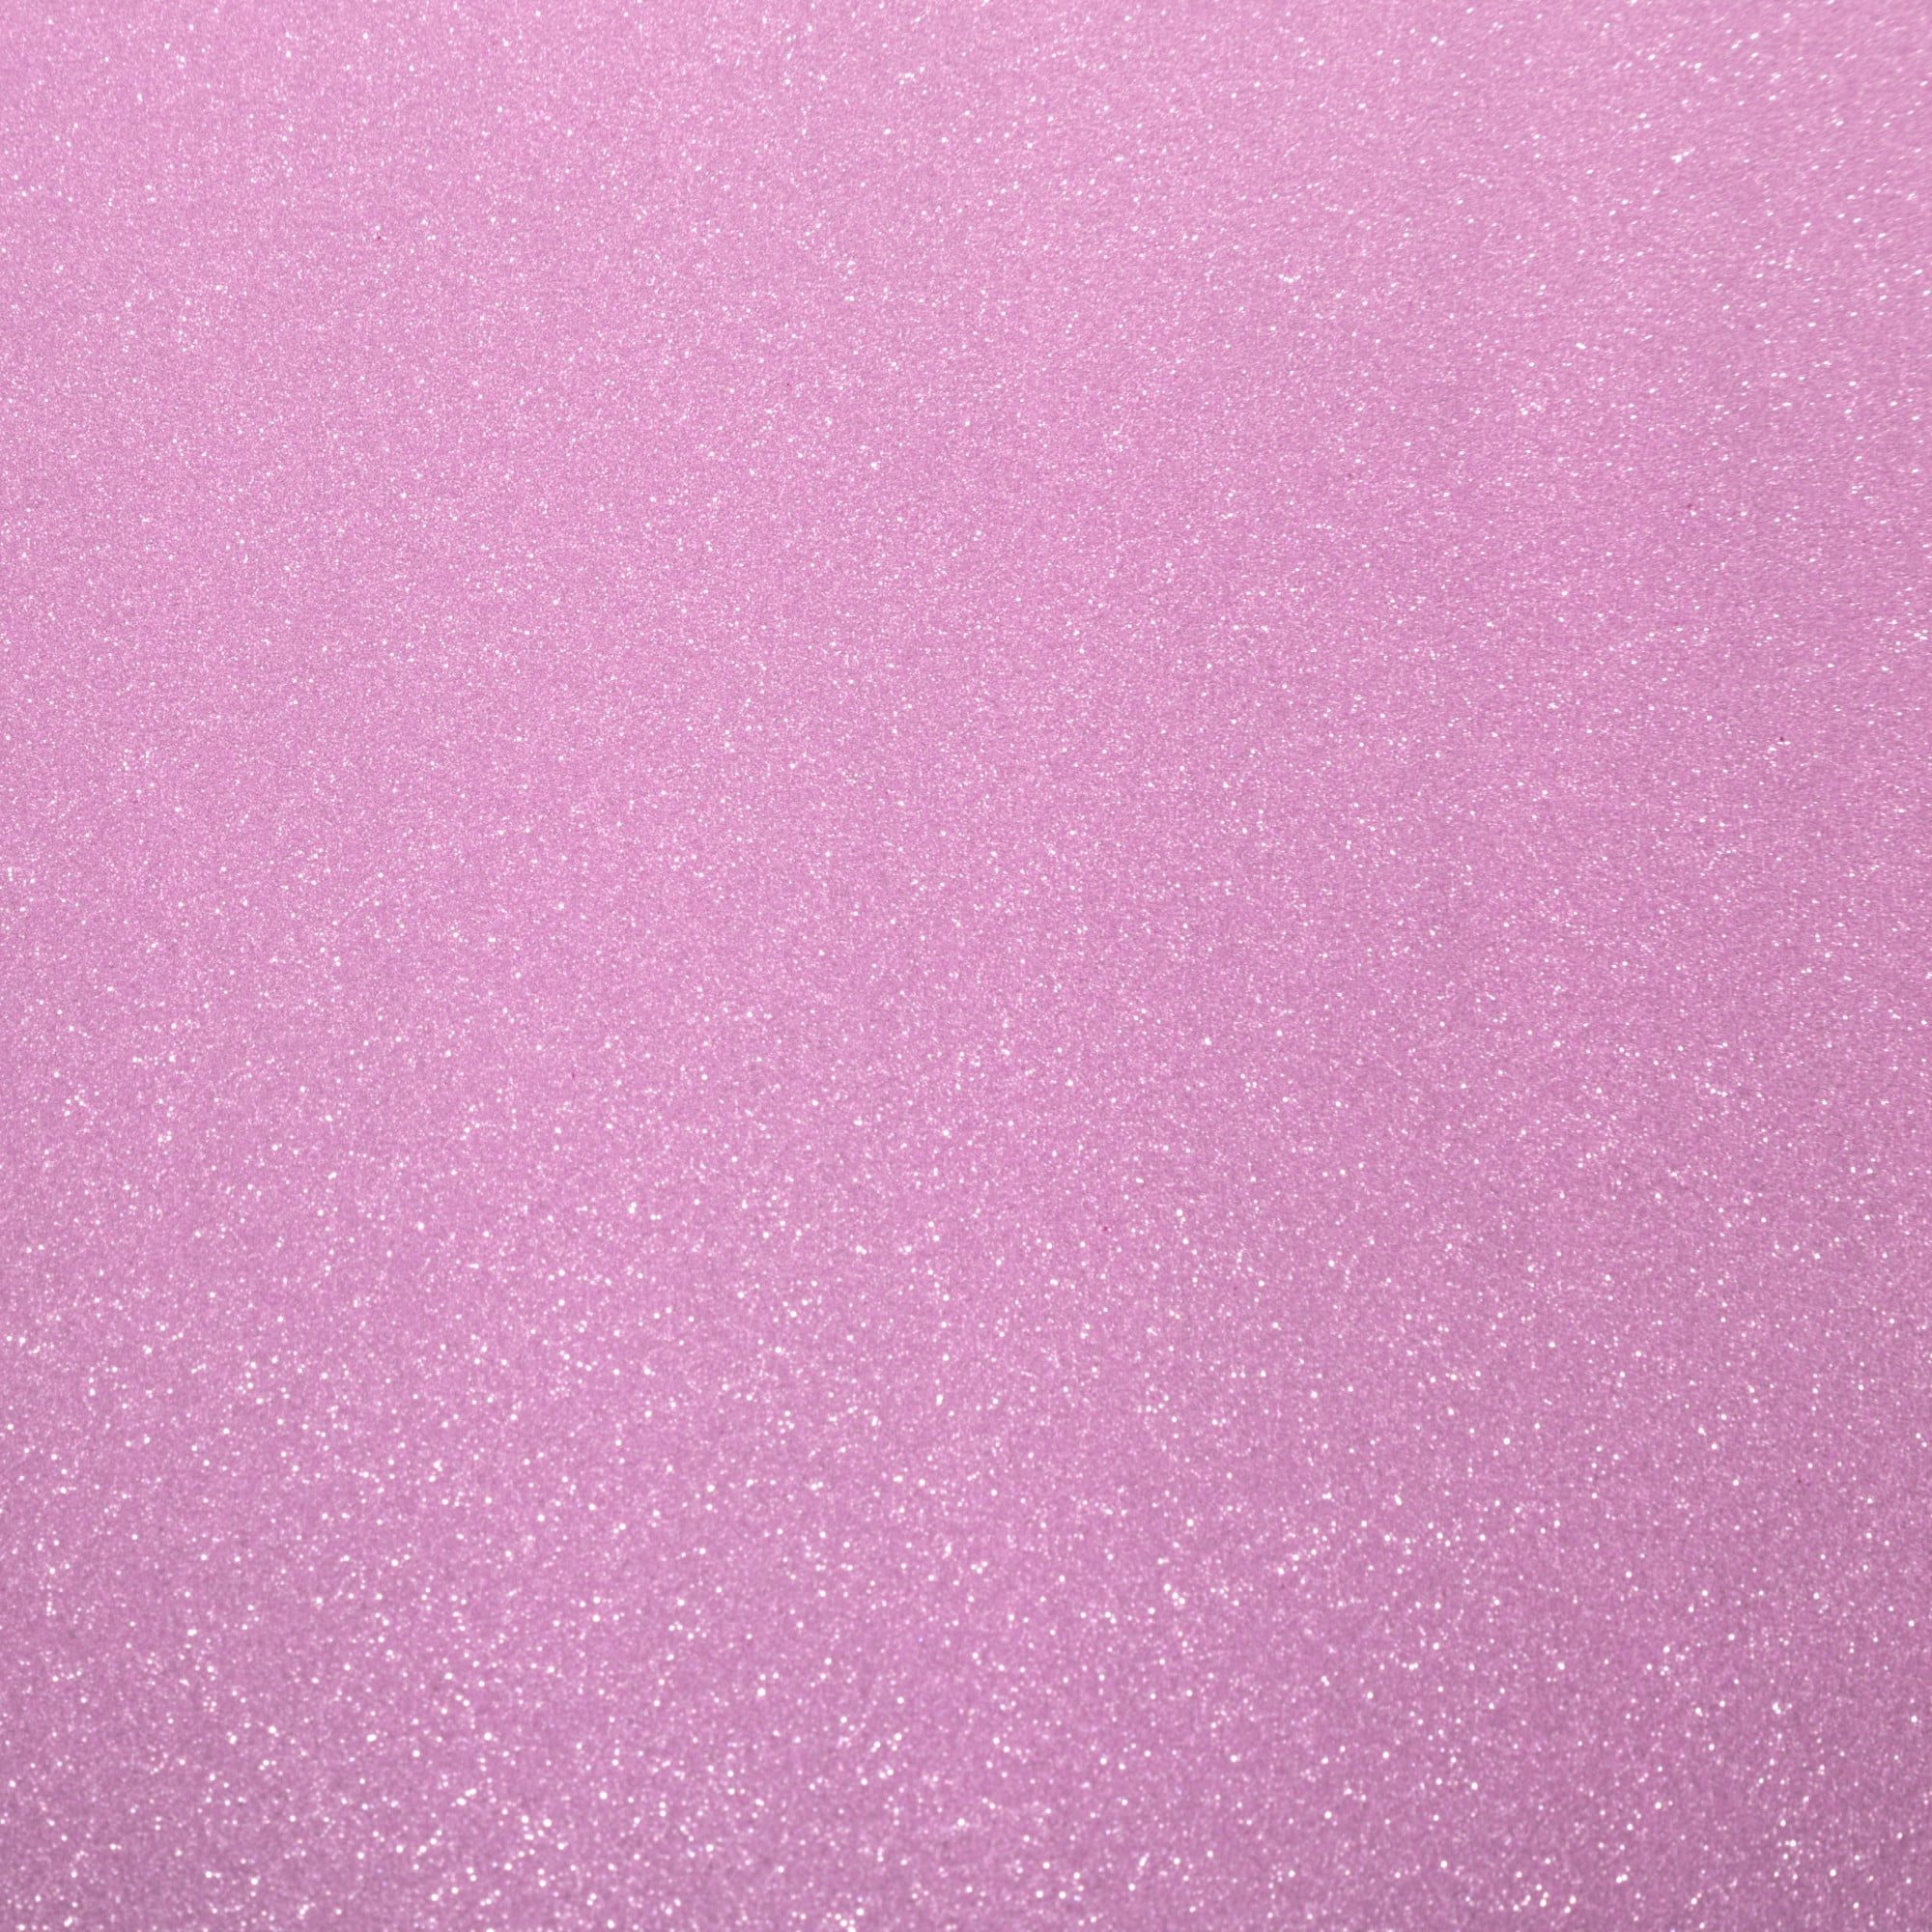 Cricut Joy Smart Vinyl Permanent Party Pink Crystal Glossy 5.5 x